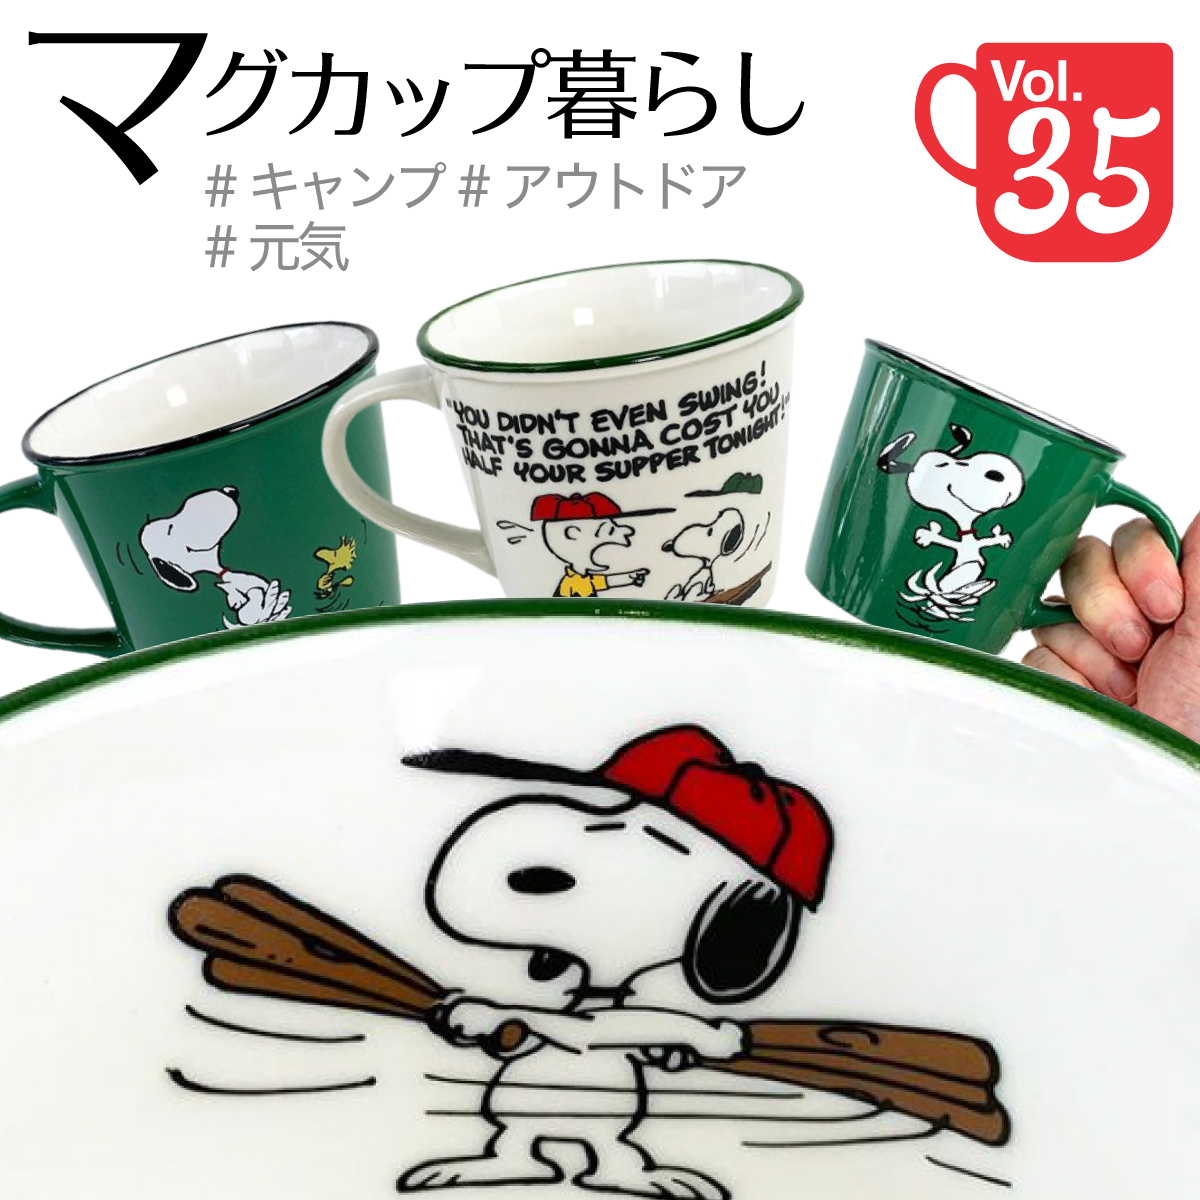 日本シリーズが熱い 野球といえばスヌーピーだよね スヌーピーマグカップ特集第35回 Perfect World Tokyo